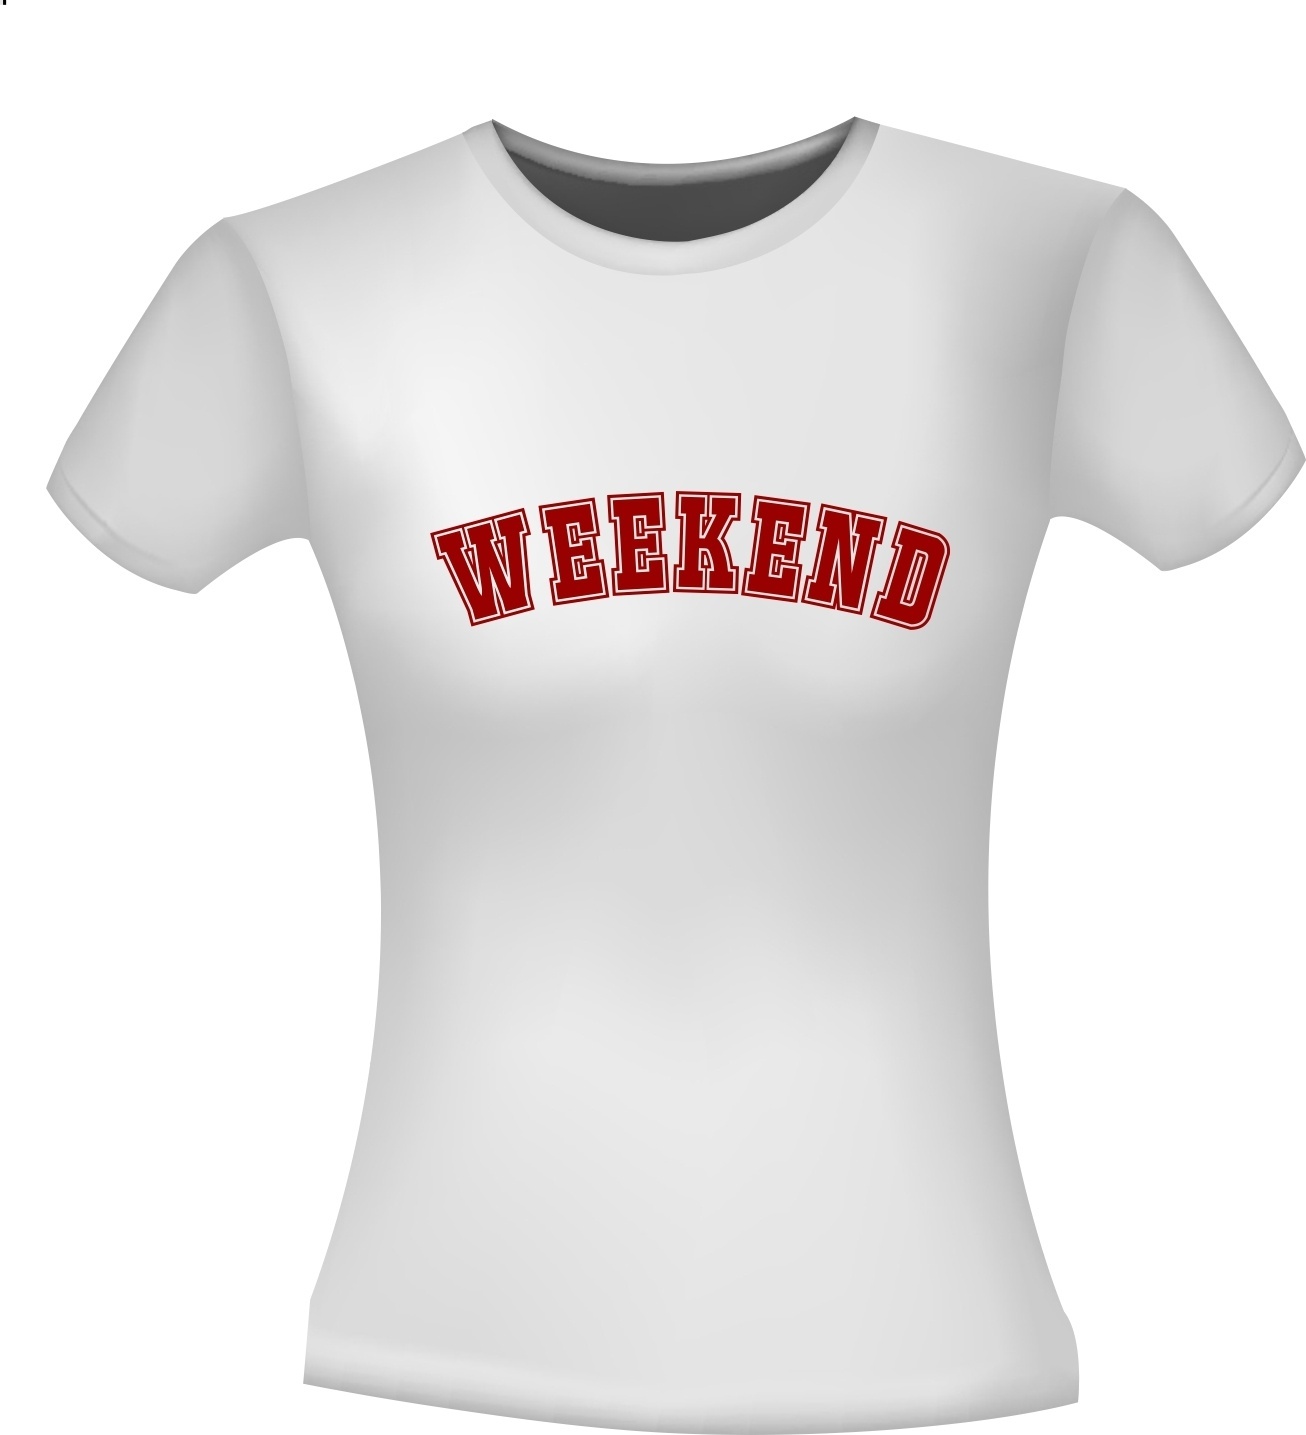 draadloos Per ongeluk Fabrikant Weekend vrij verlof genieten uitgaan T-shirt